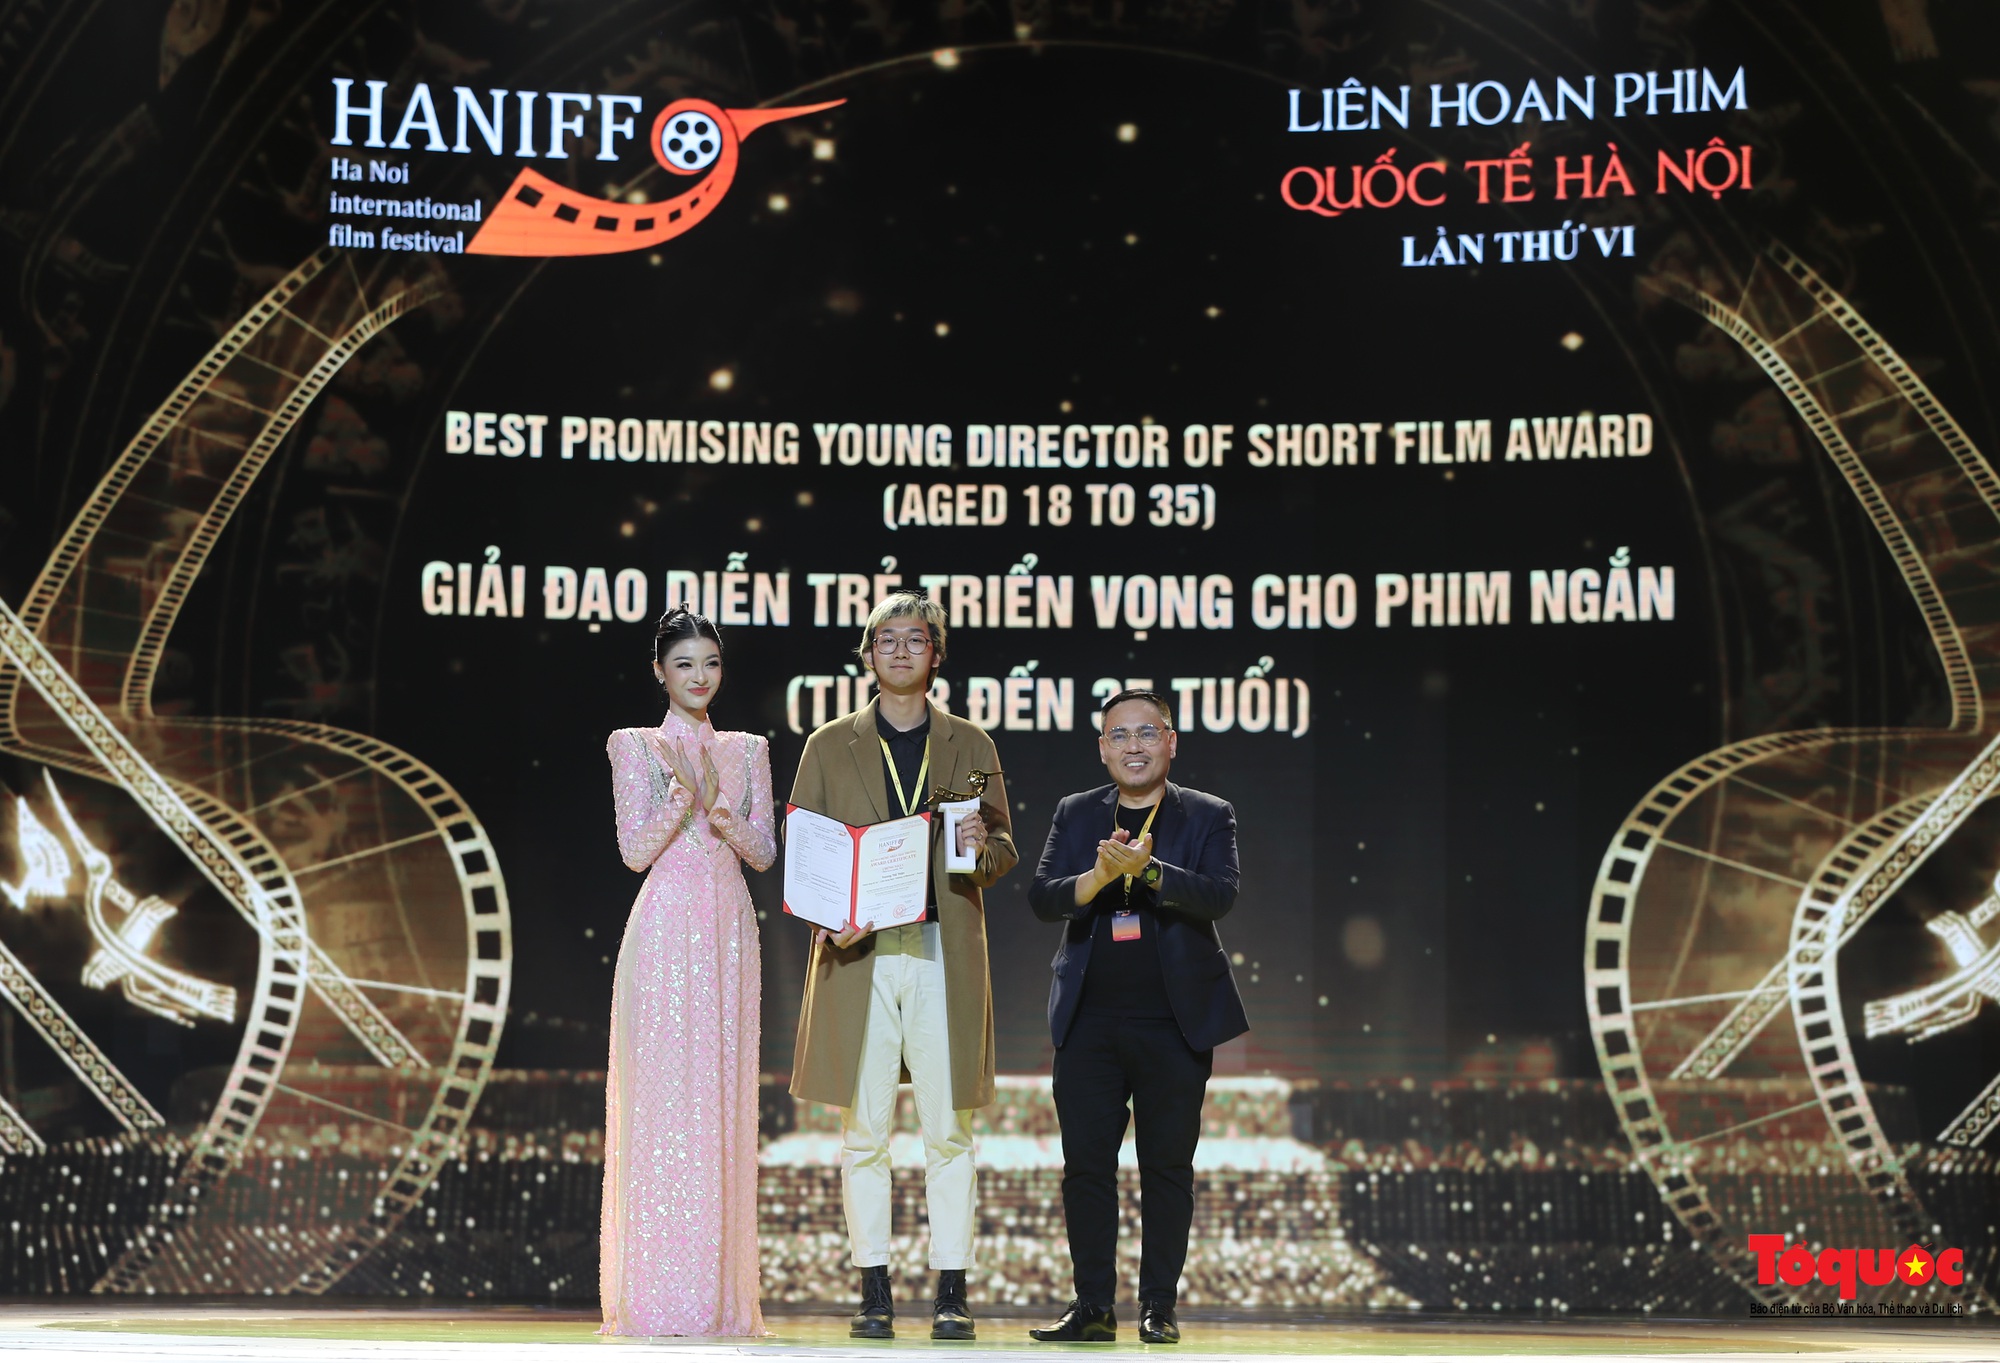 Bế mạc HANIFF 2022: 12 hàng mục giải thưởng trao cho các bộ phim, diễn viên, đạo diễn xuất sắc - Ảnh 13.